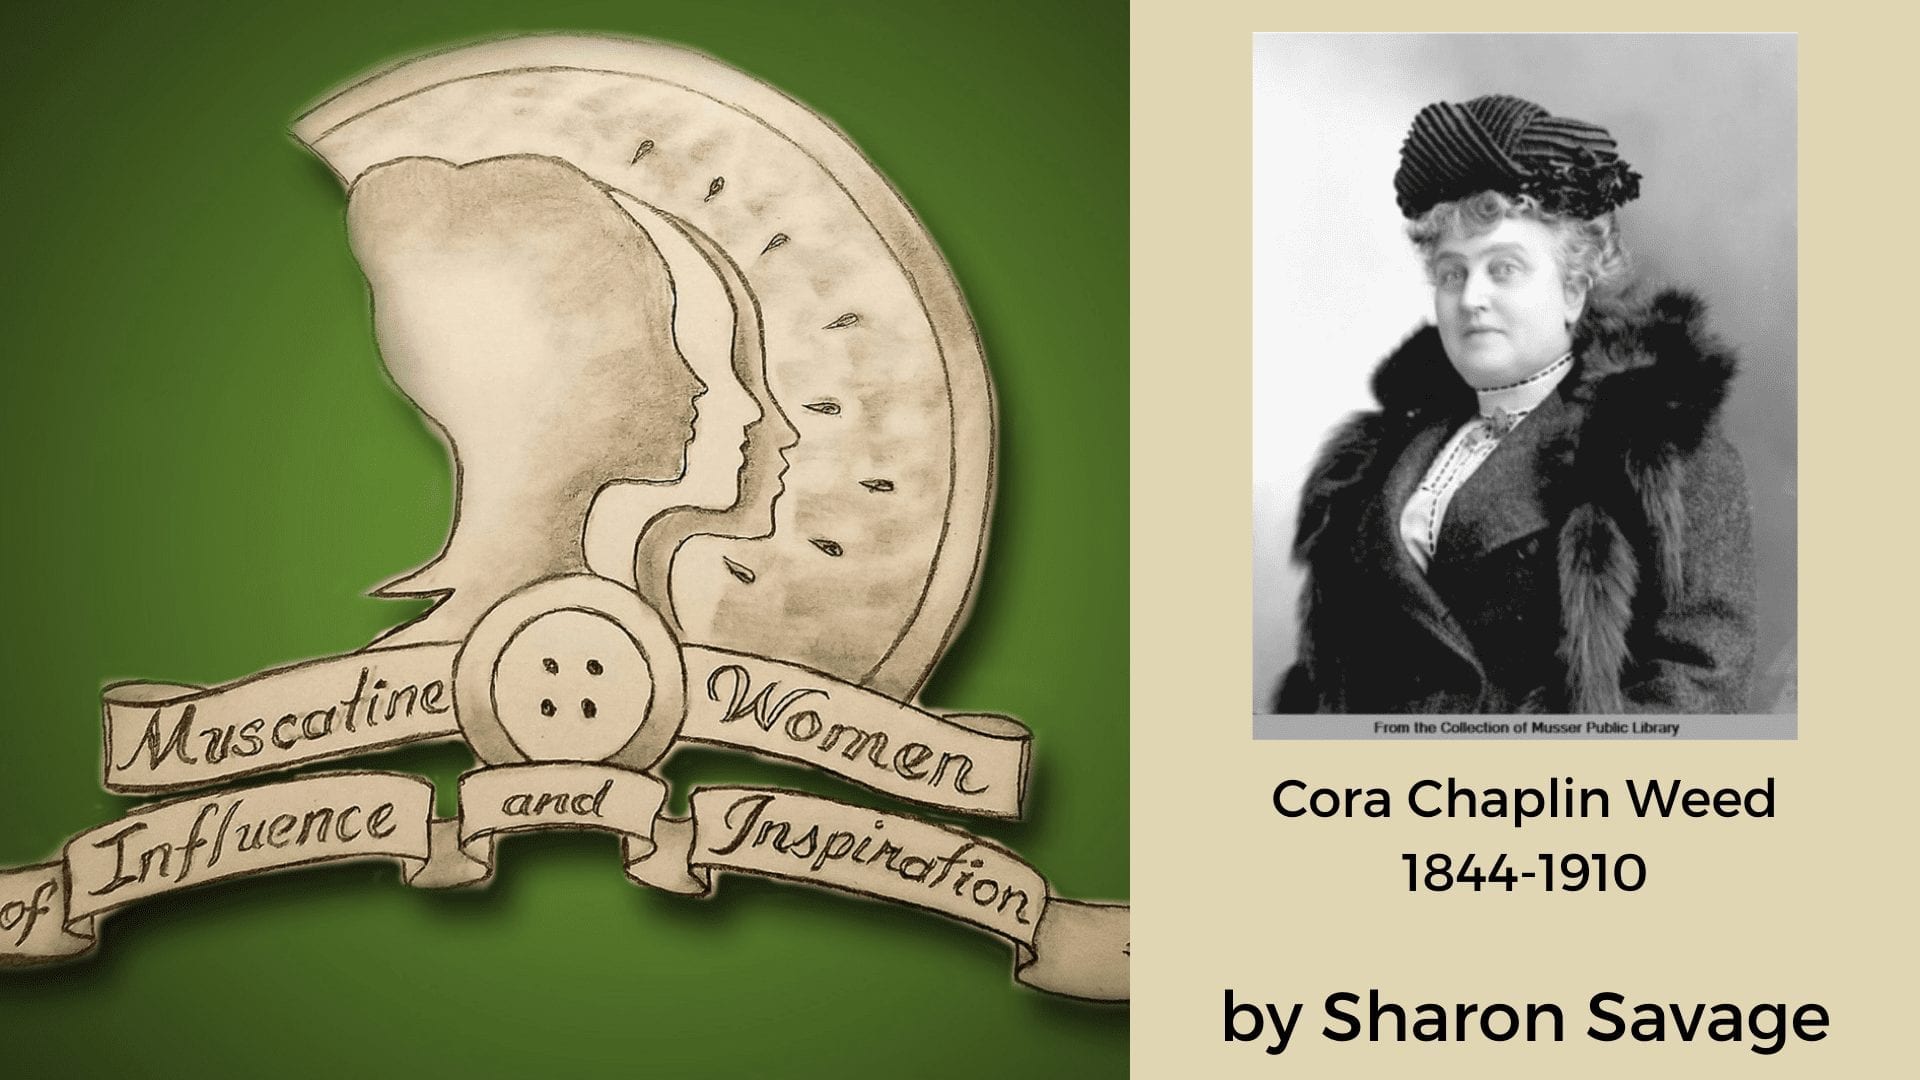 Cora Chaplin Weed 1844-1910